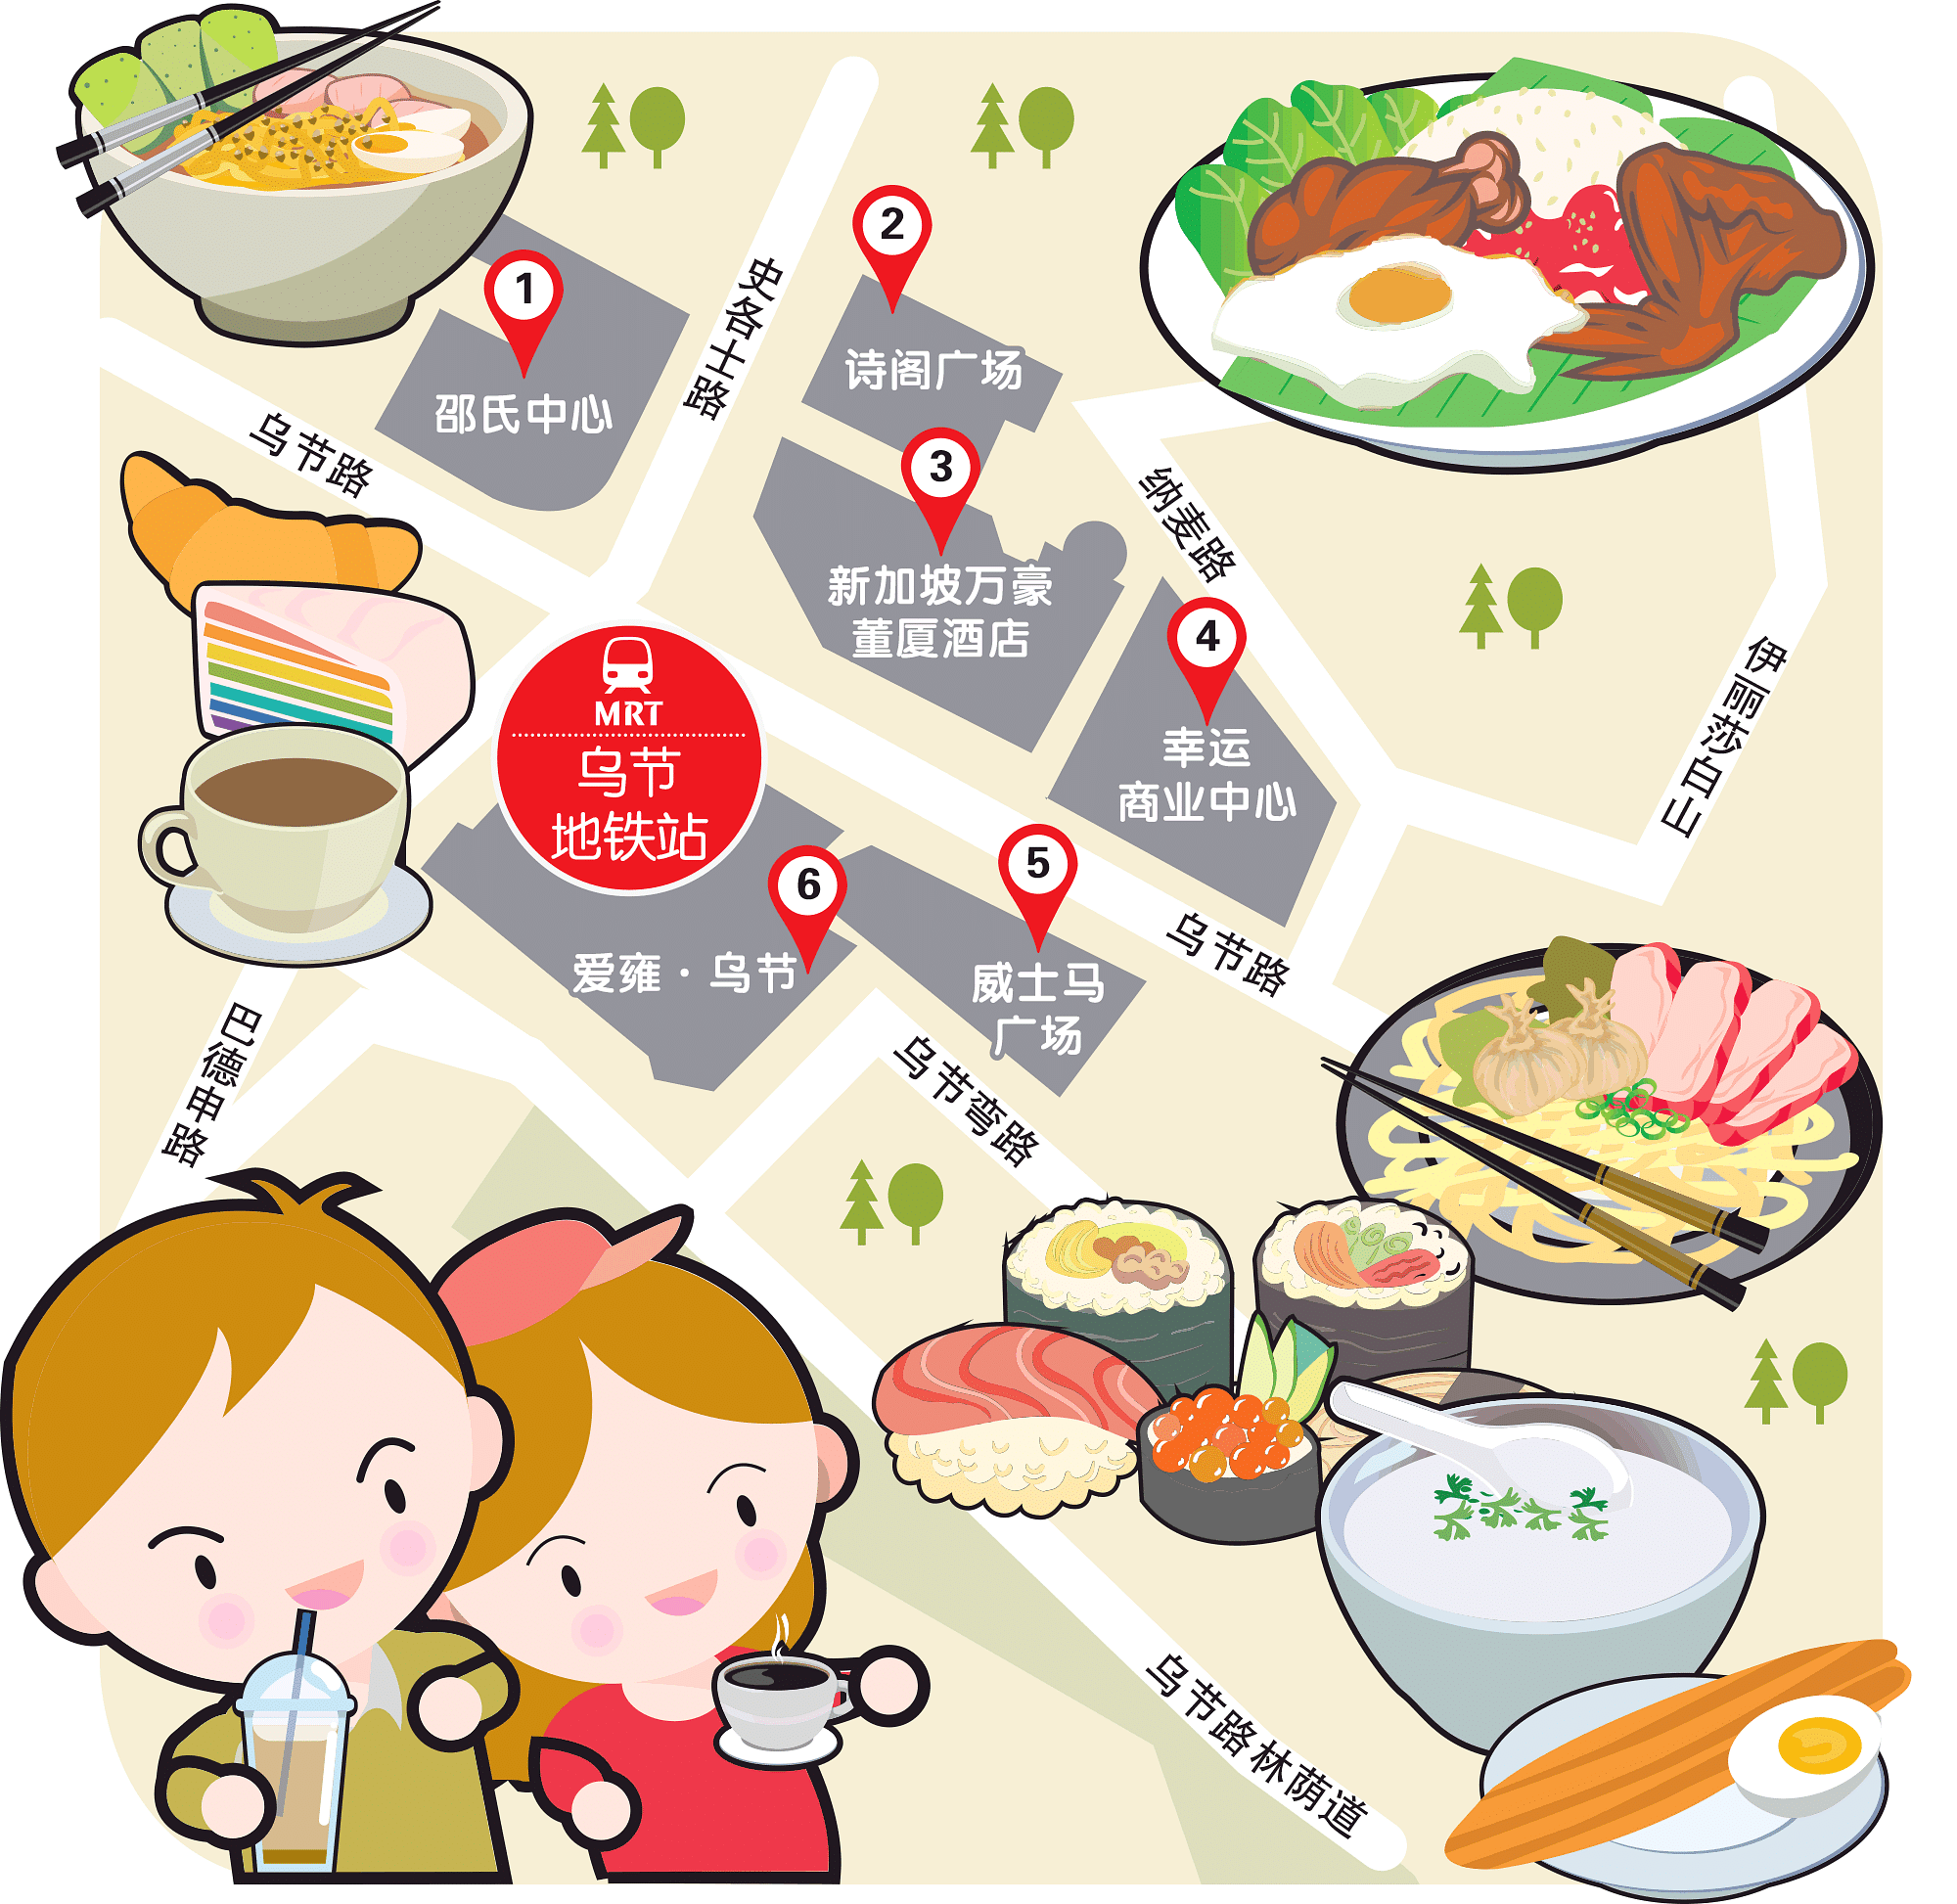 Wanbao Food Search @Orchard MRT